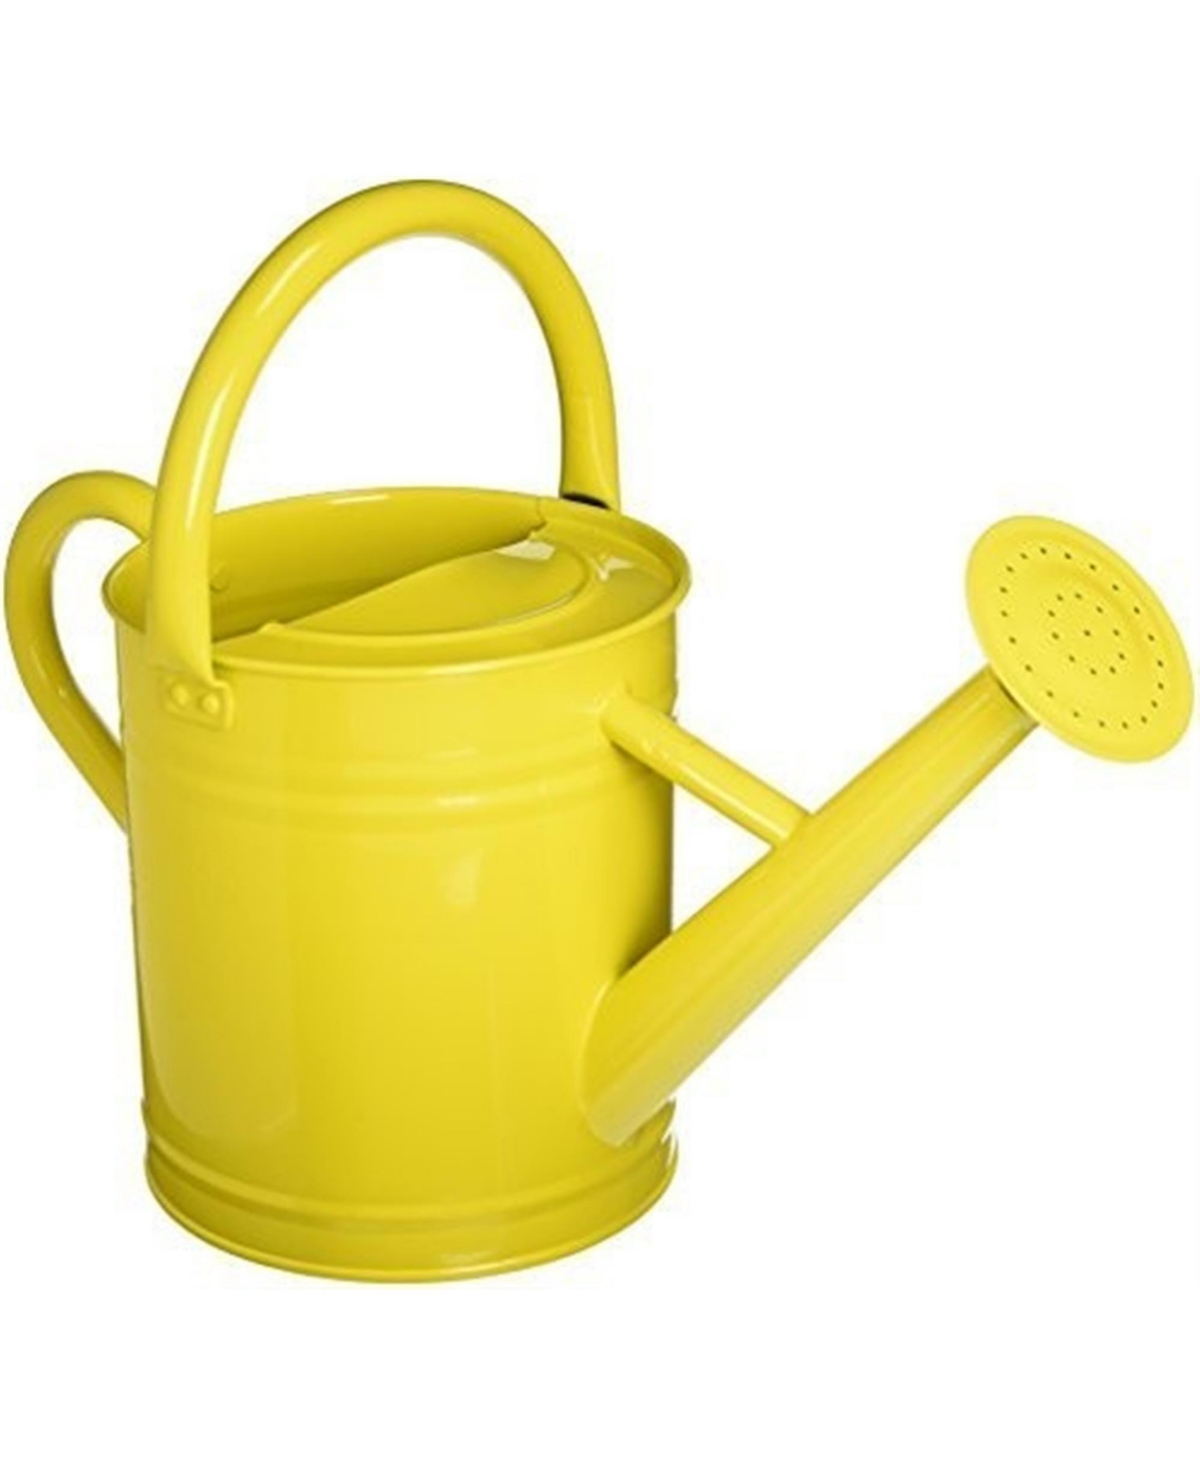 Gardener Select Metal Watering Can, Lemon, 0.92 Gallons - Yellow